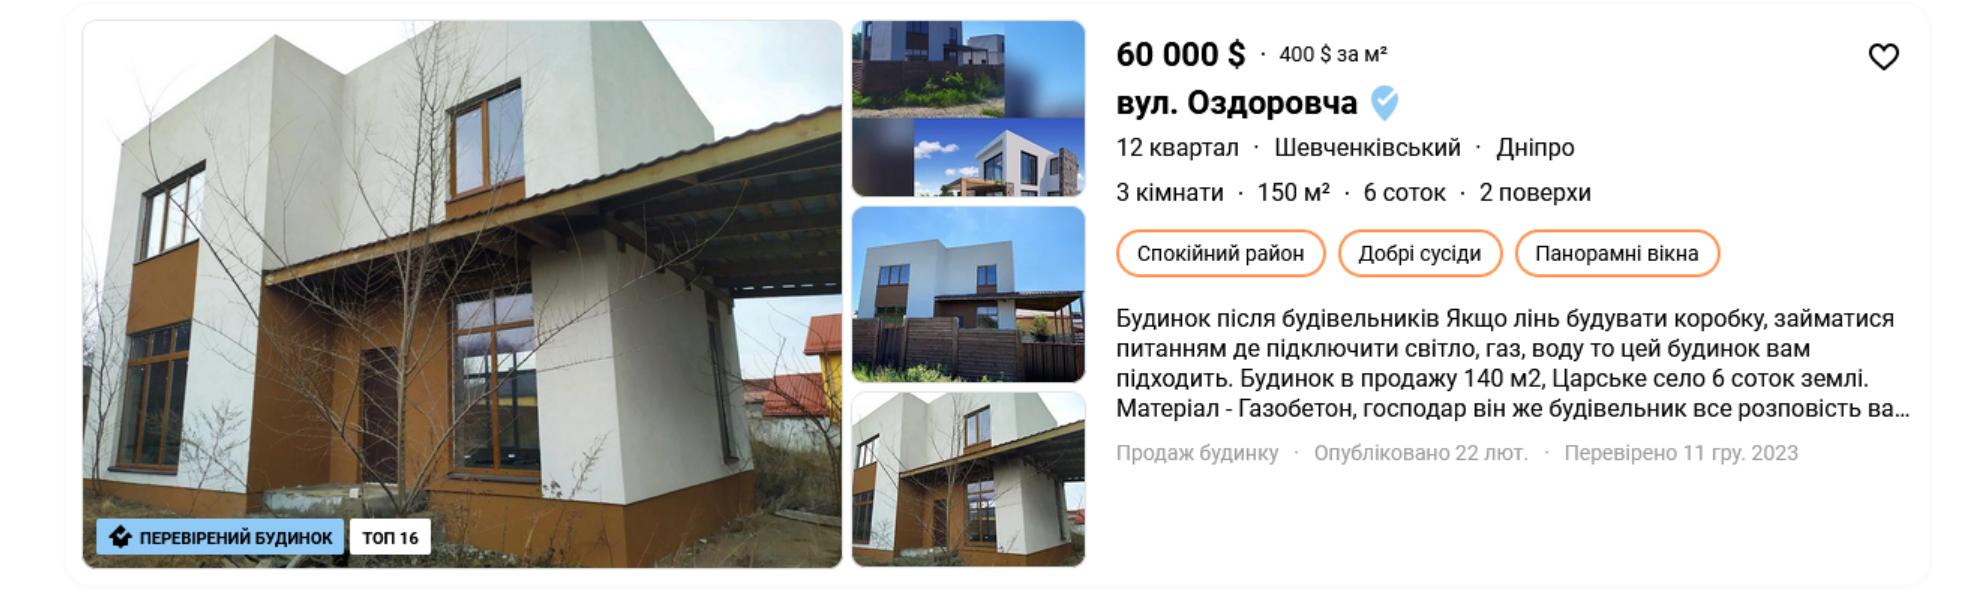 у Дніпропетровську в районі 12 квартал на продаж виставлено шикарний будинок-новобудову